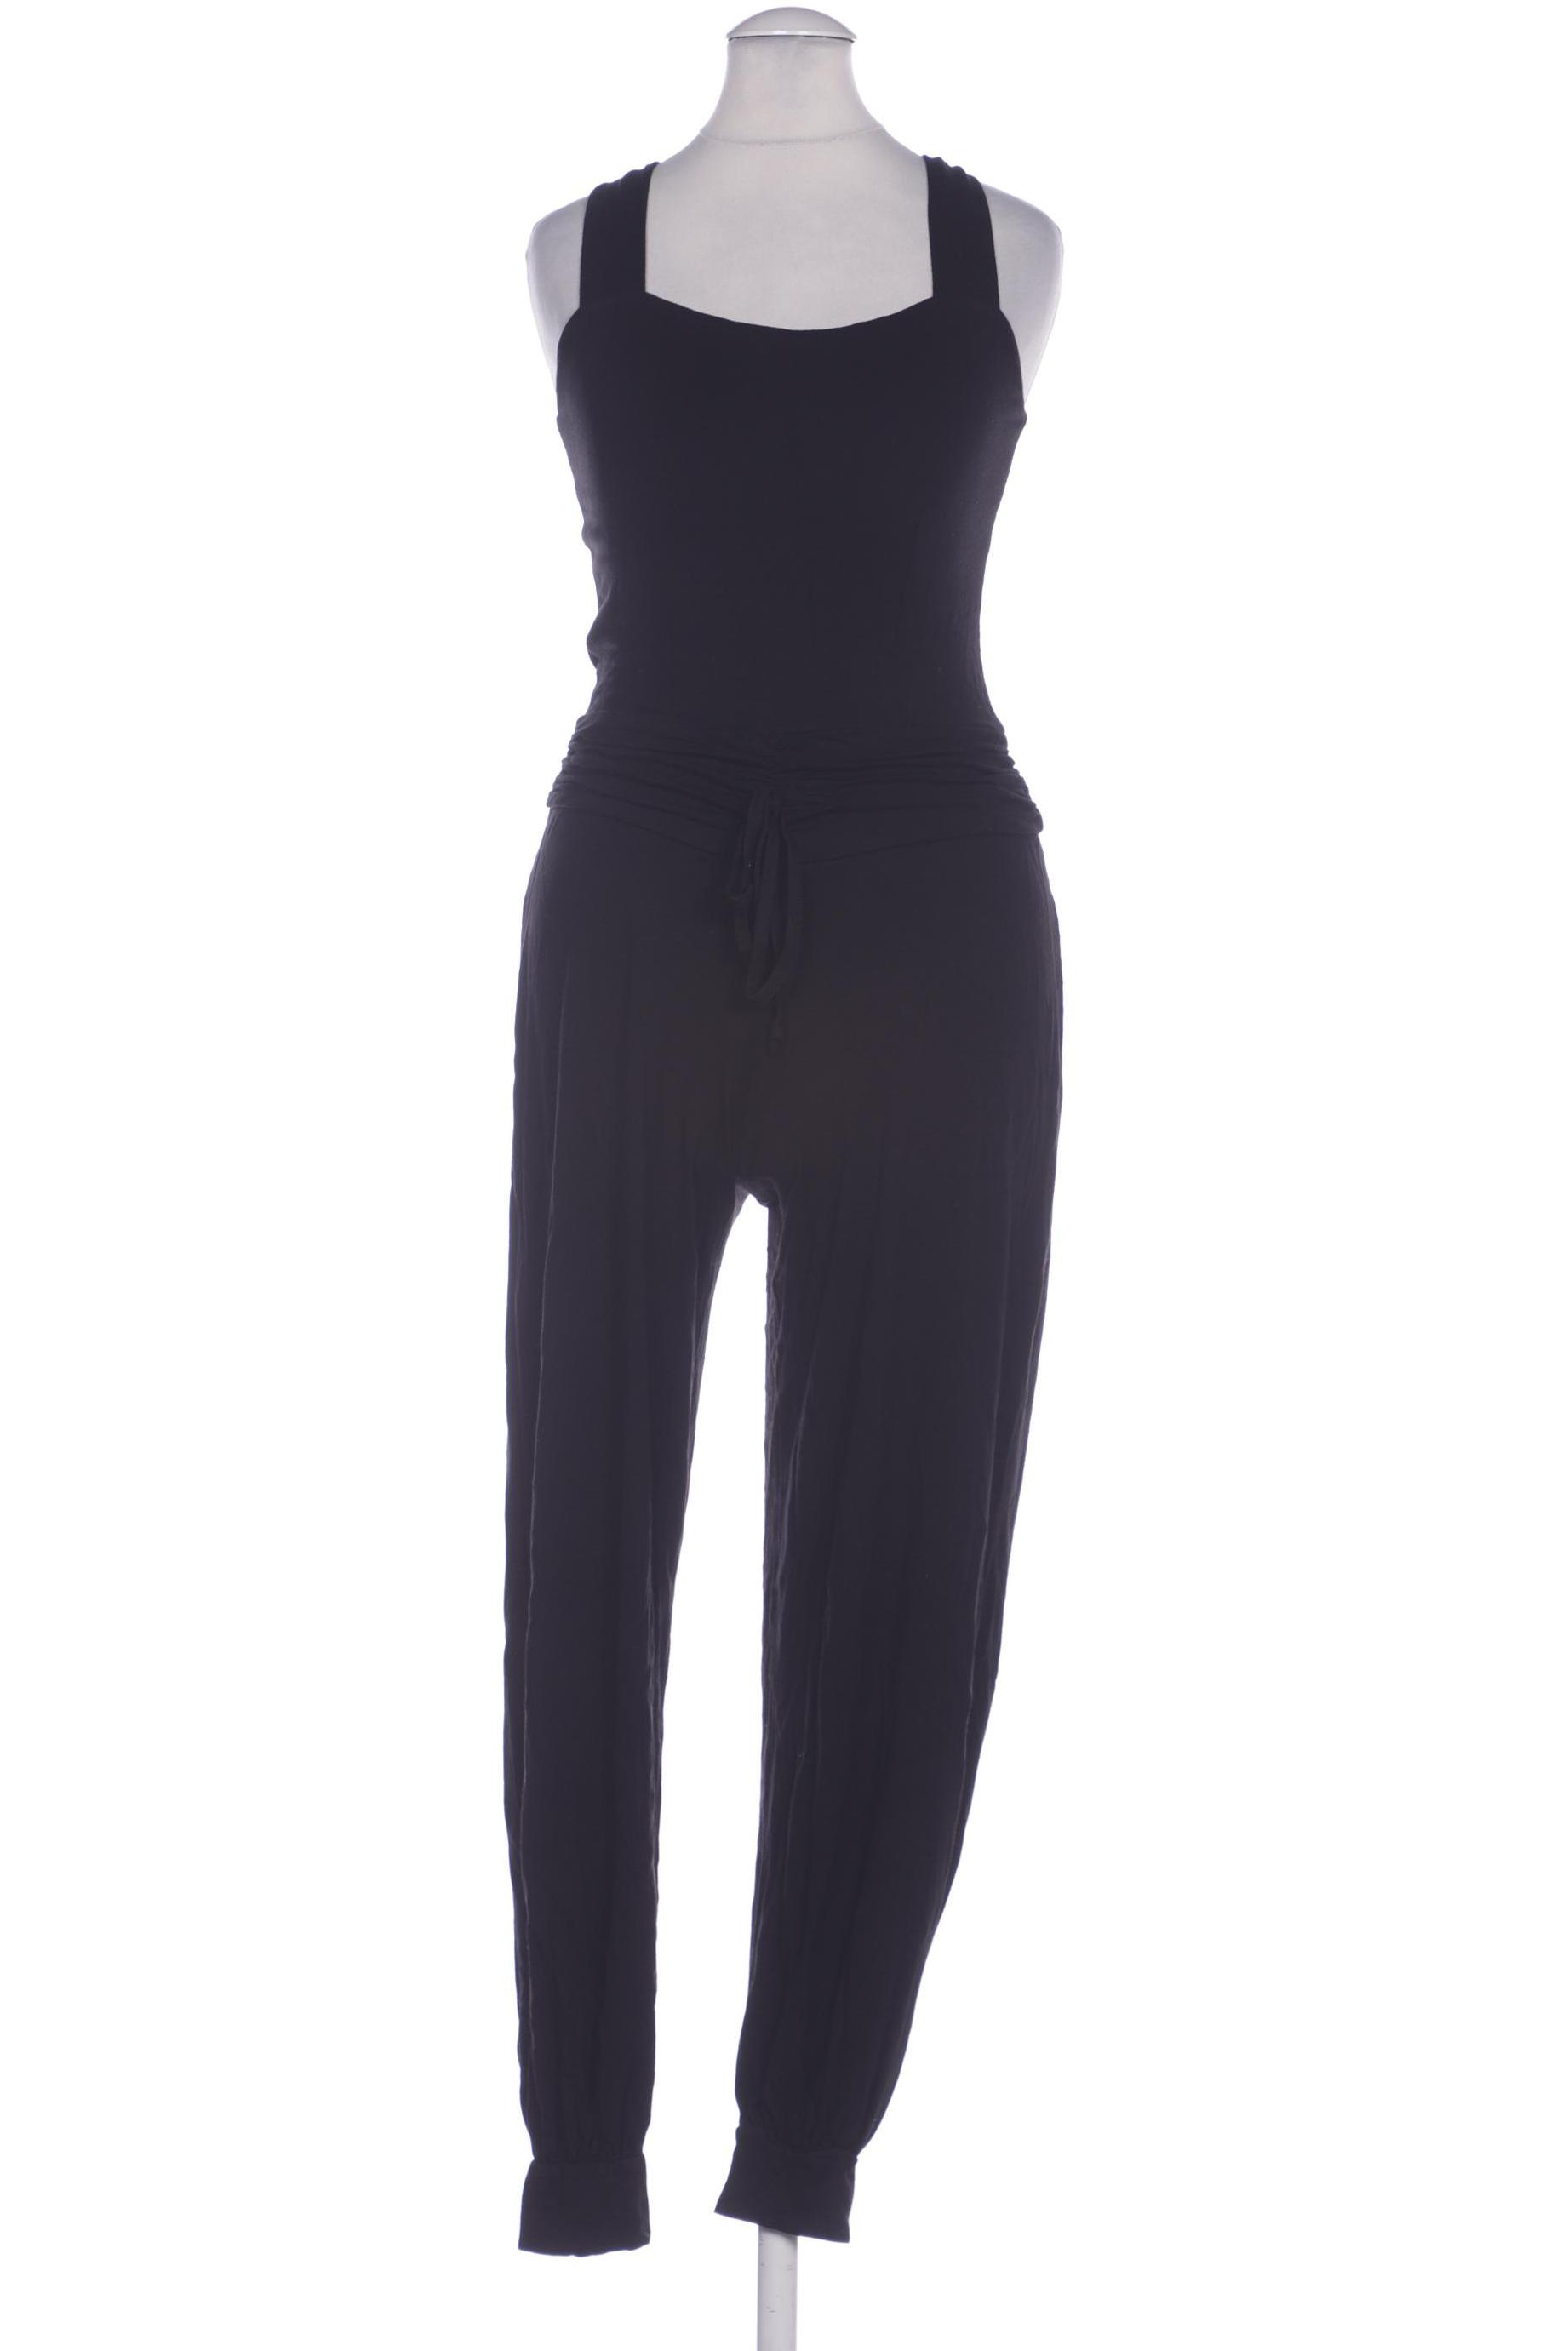 Heine Damen Jumpsuit/Overall, schwarz von heine